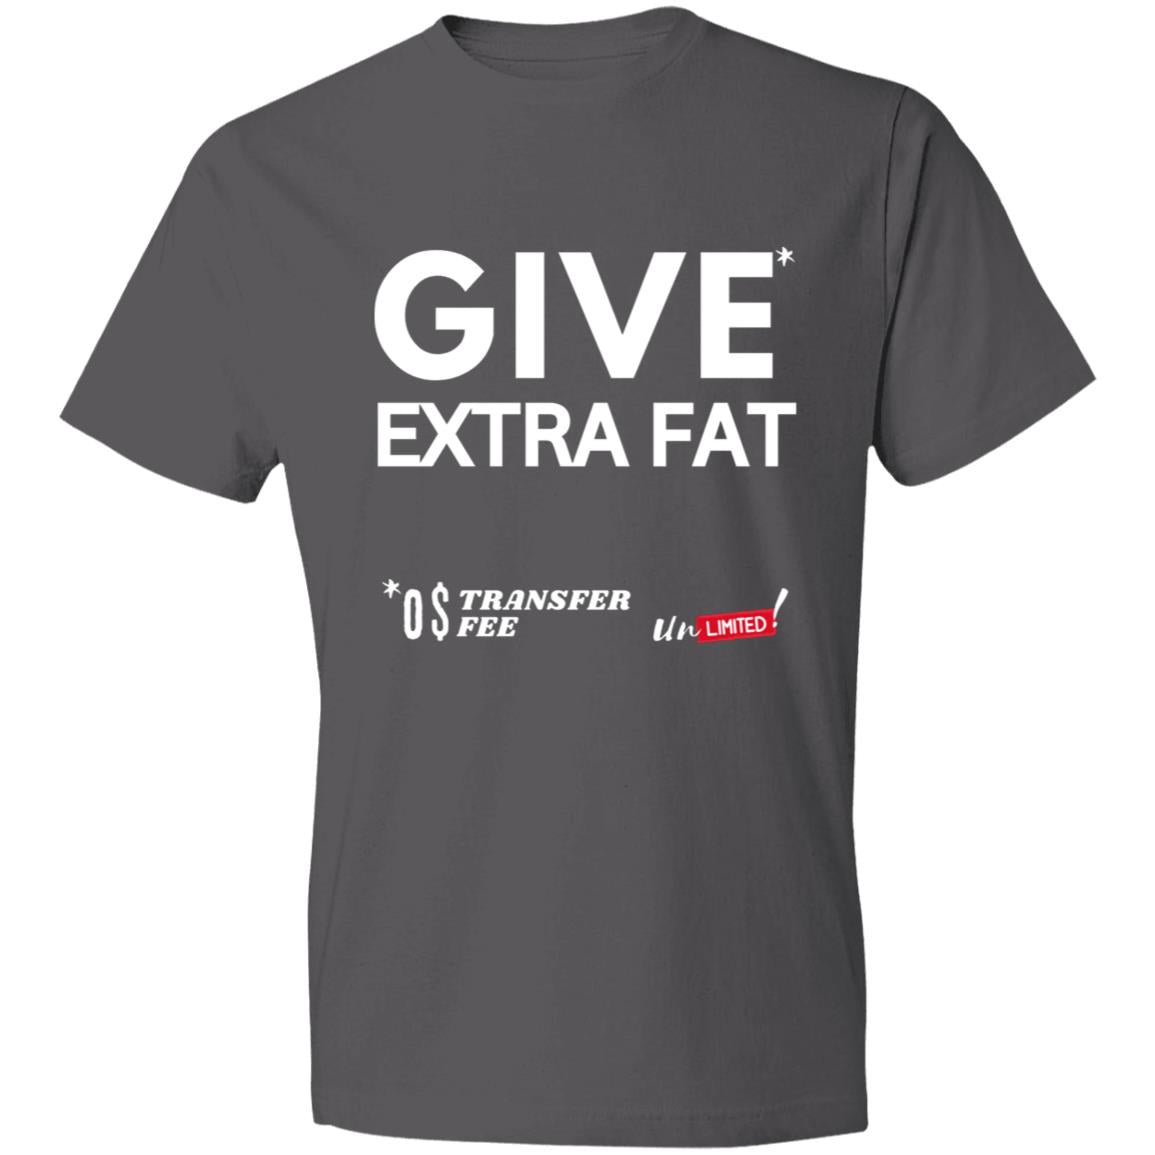 EXTRA FAT DEAL Lightweight T-Shirt 4.5 oz